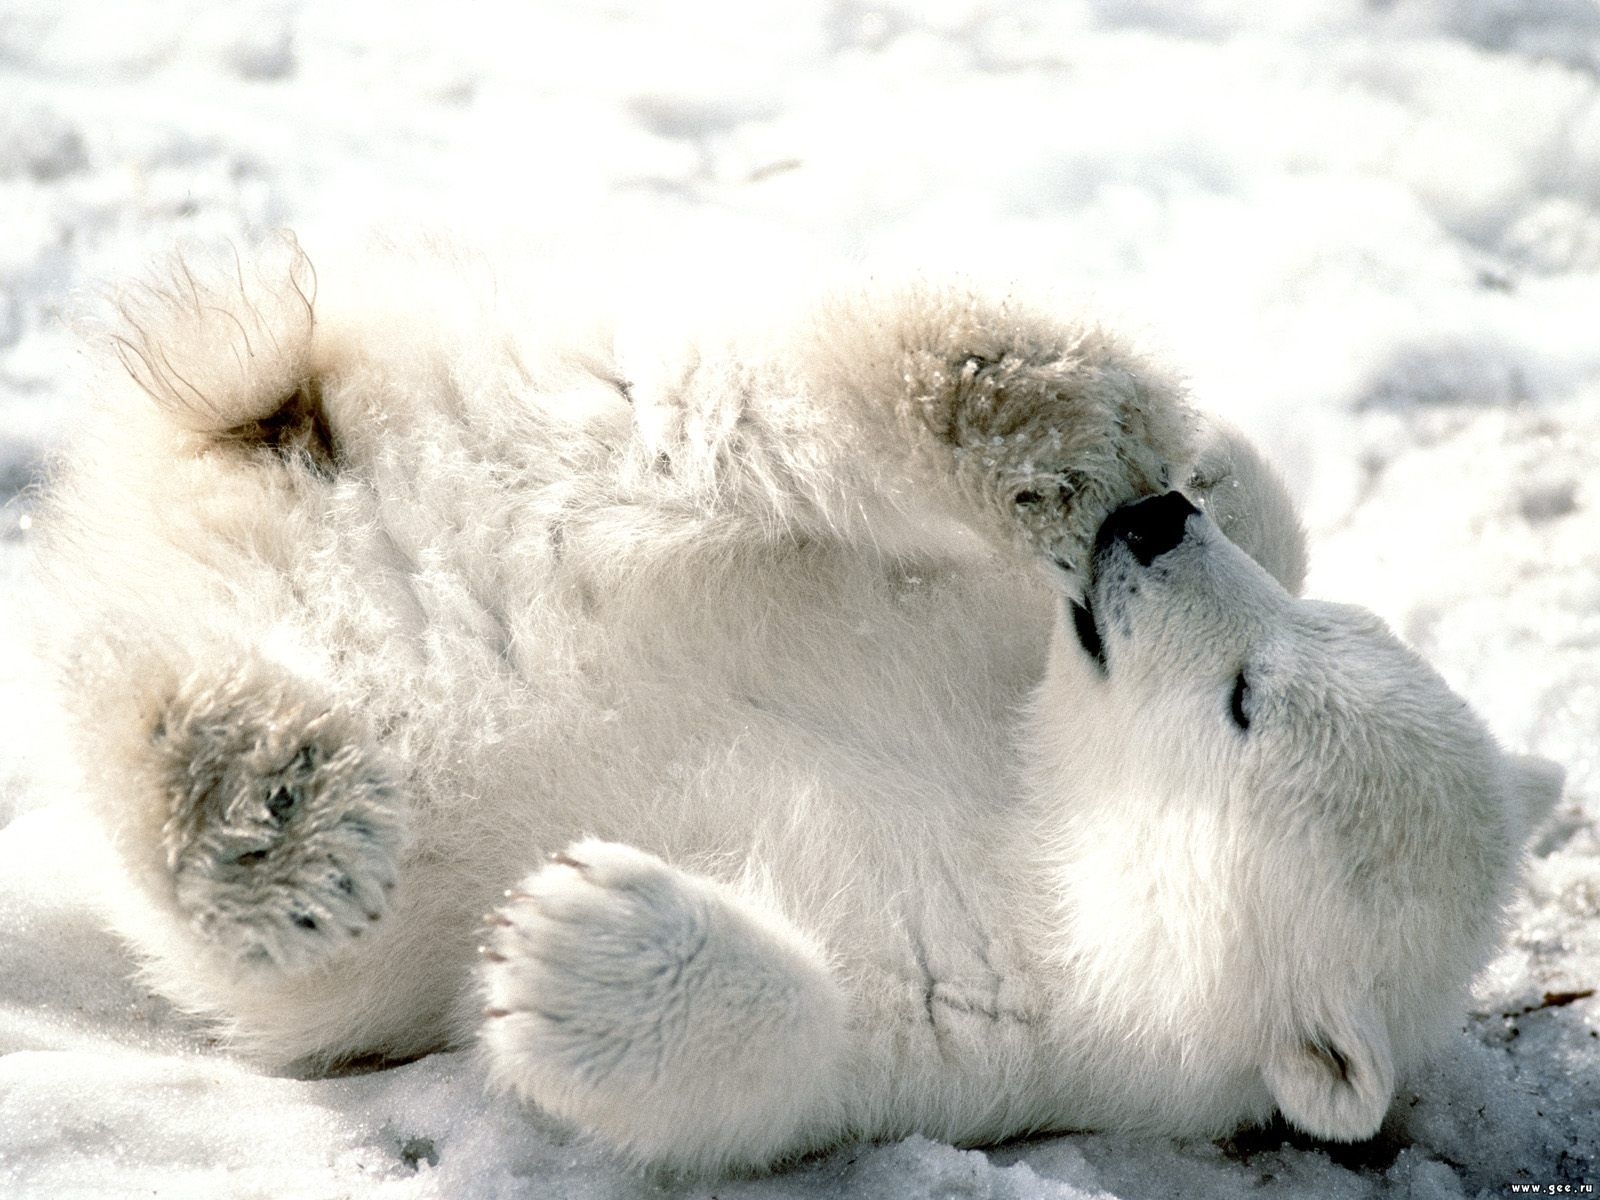 Скачать обои бесплатно Медведи, Снег, Животные картинка на рабочий стол ПК